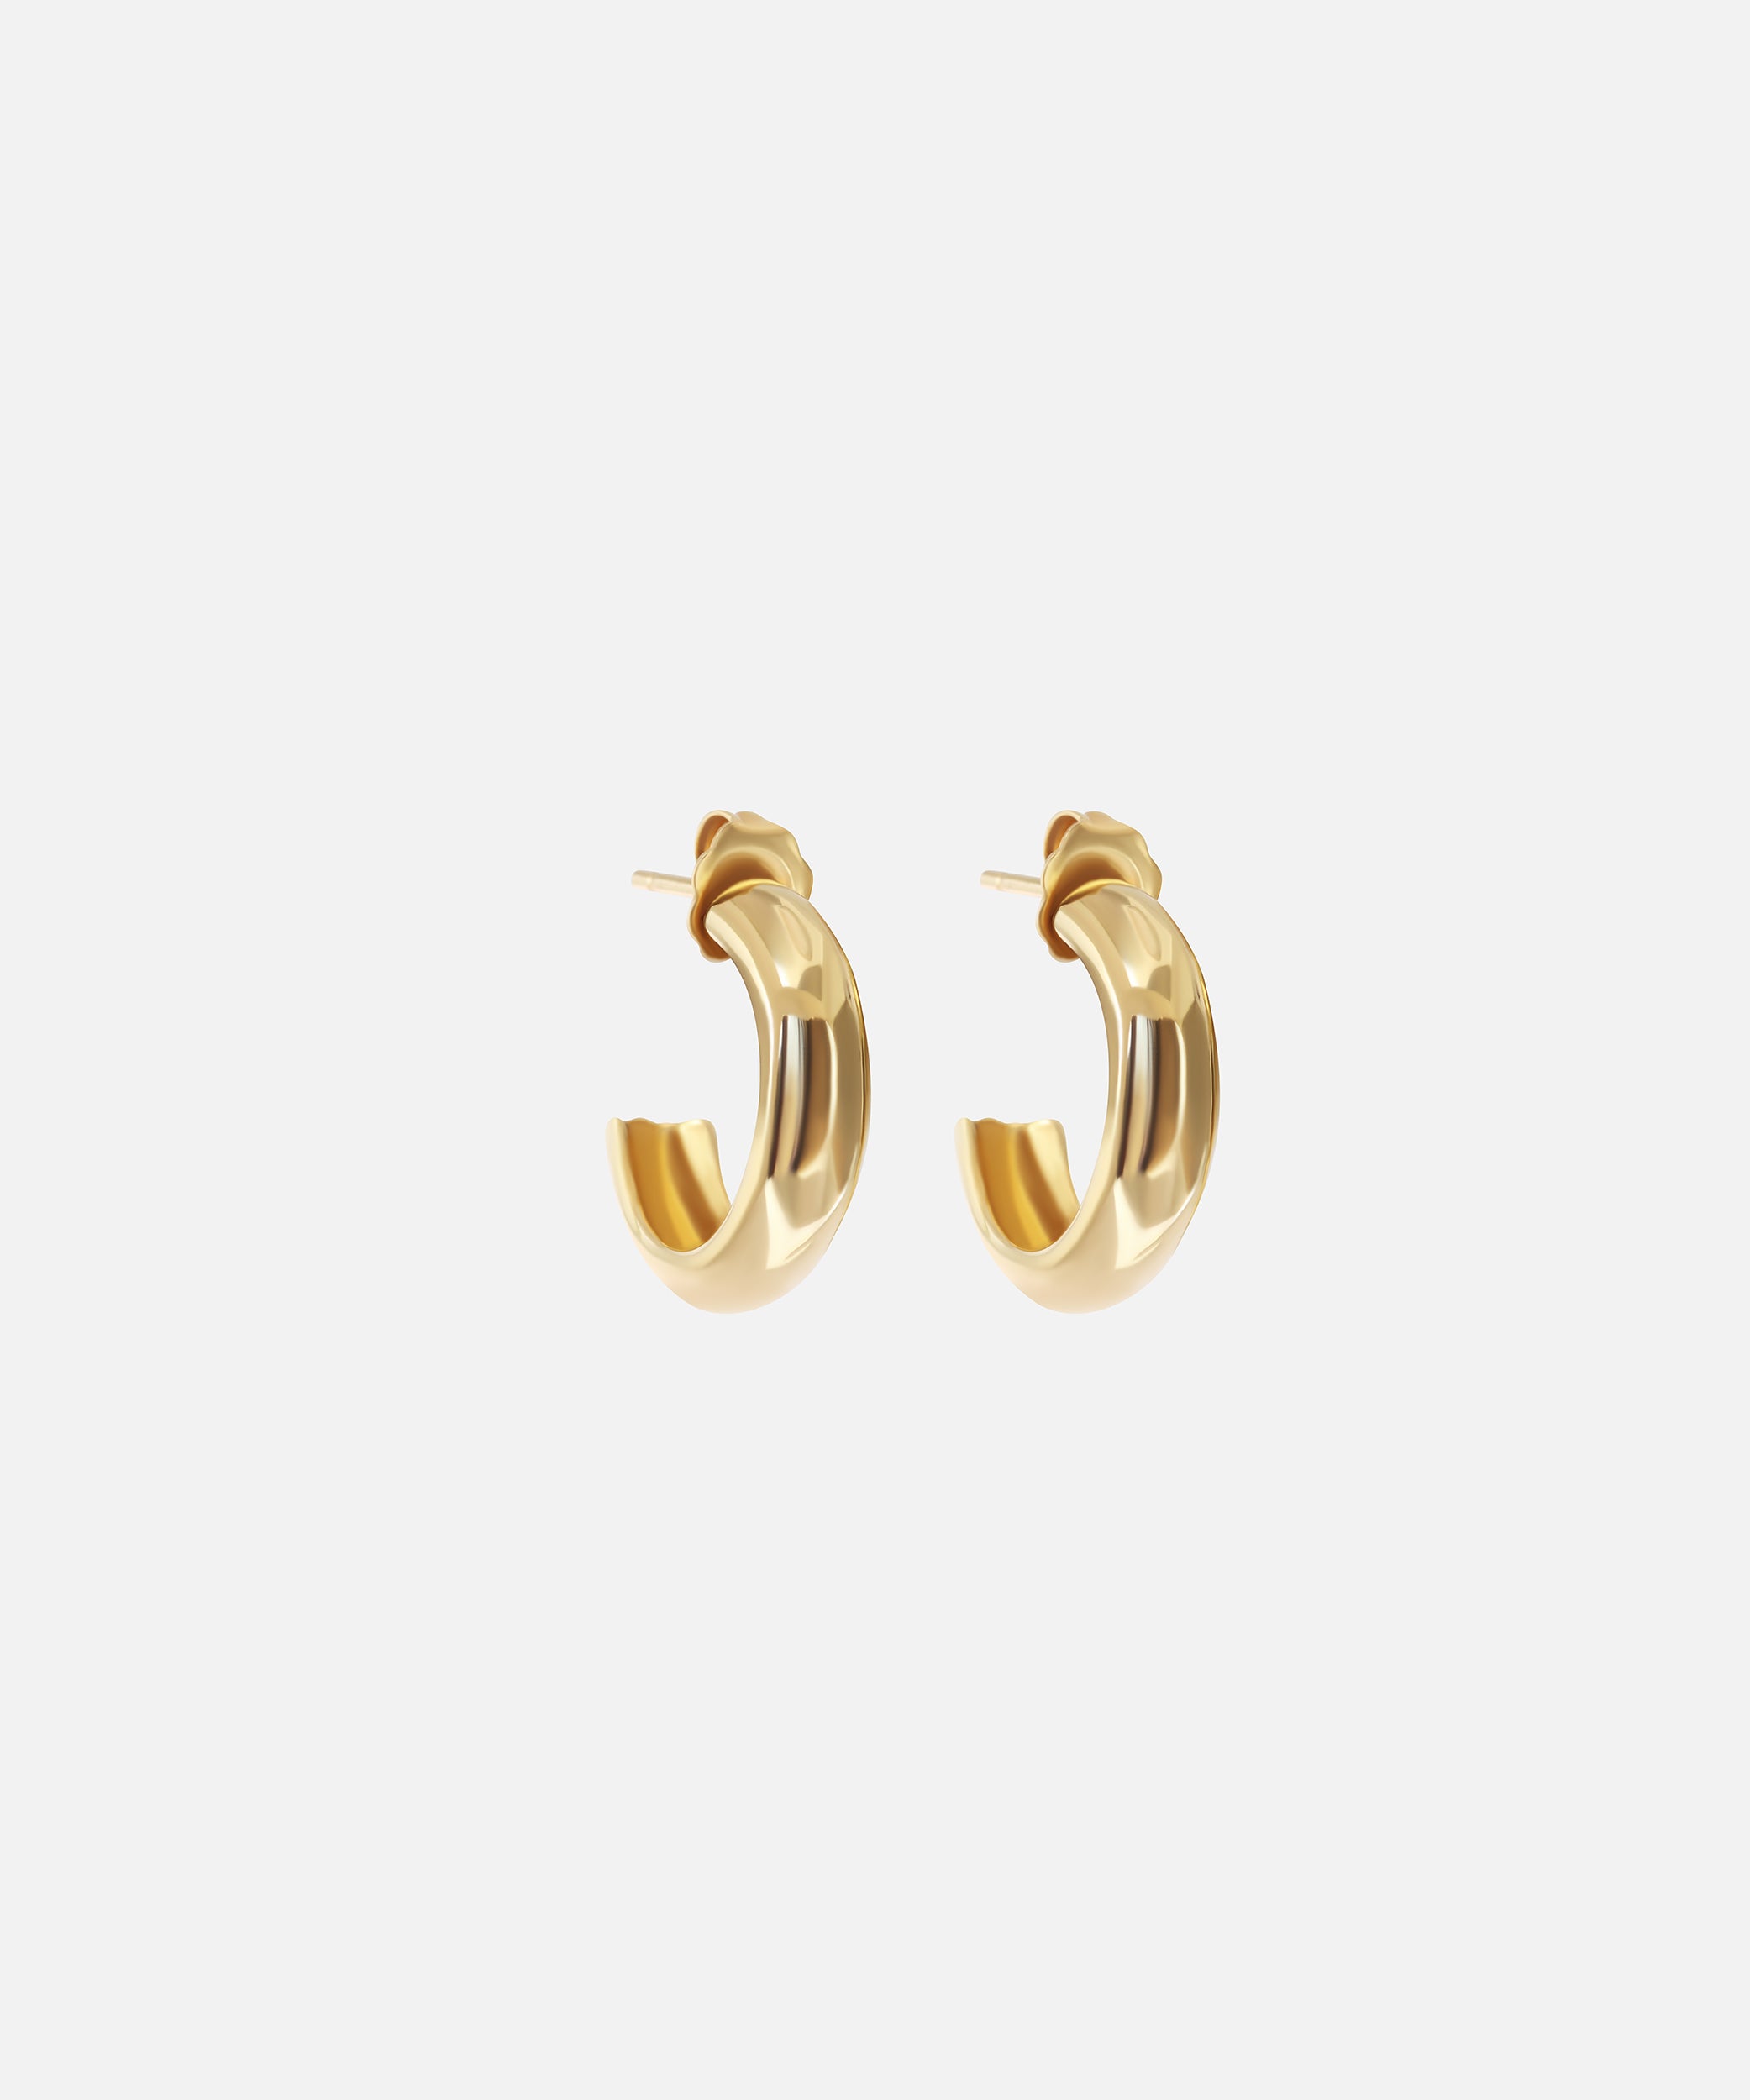 Gold Hoops By Bree Altman in earrings Category